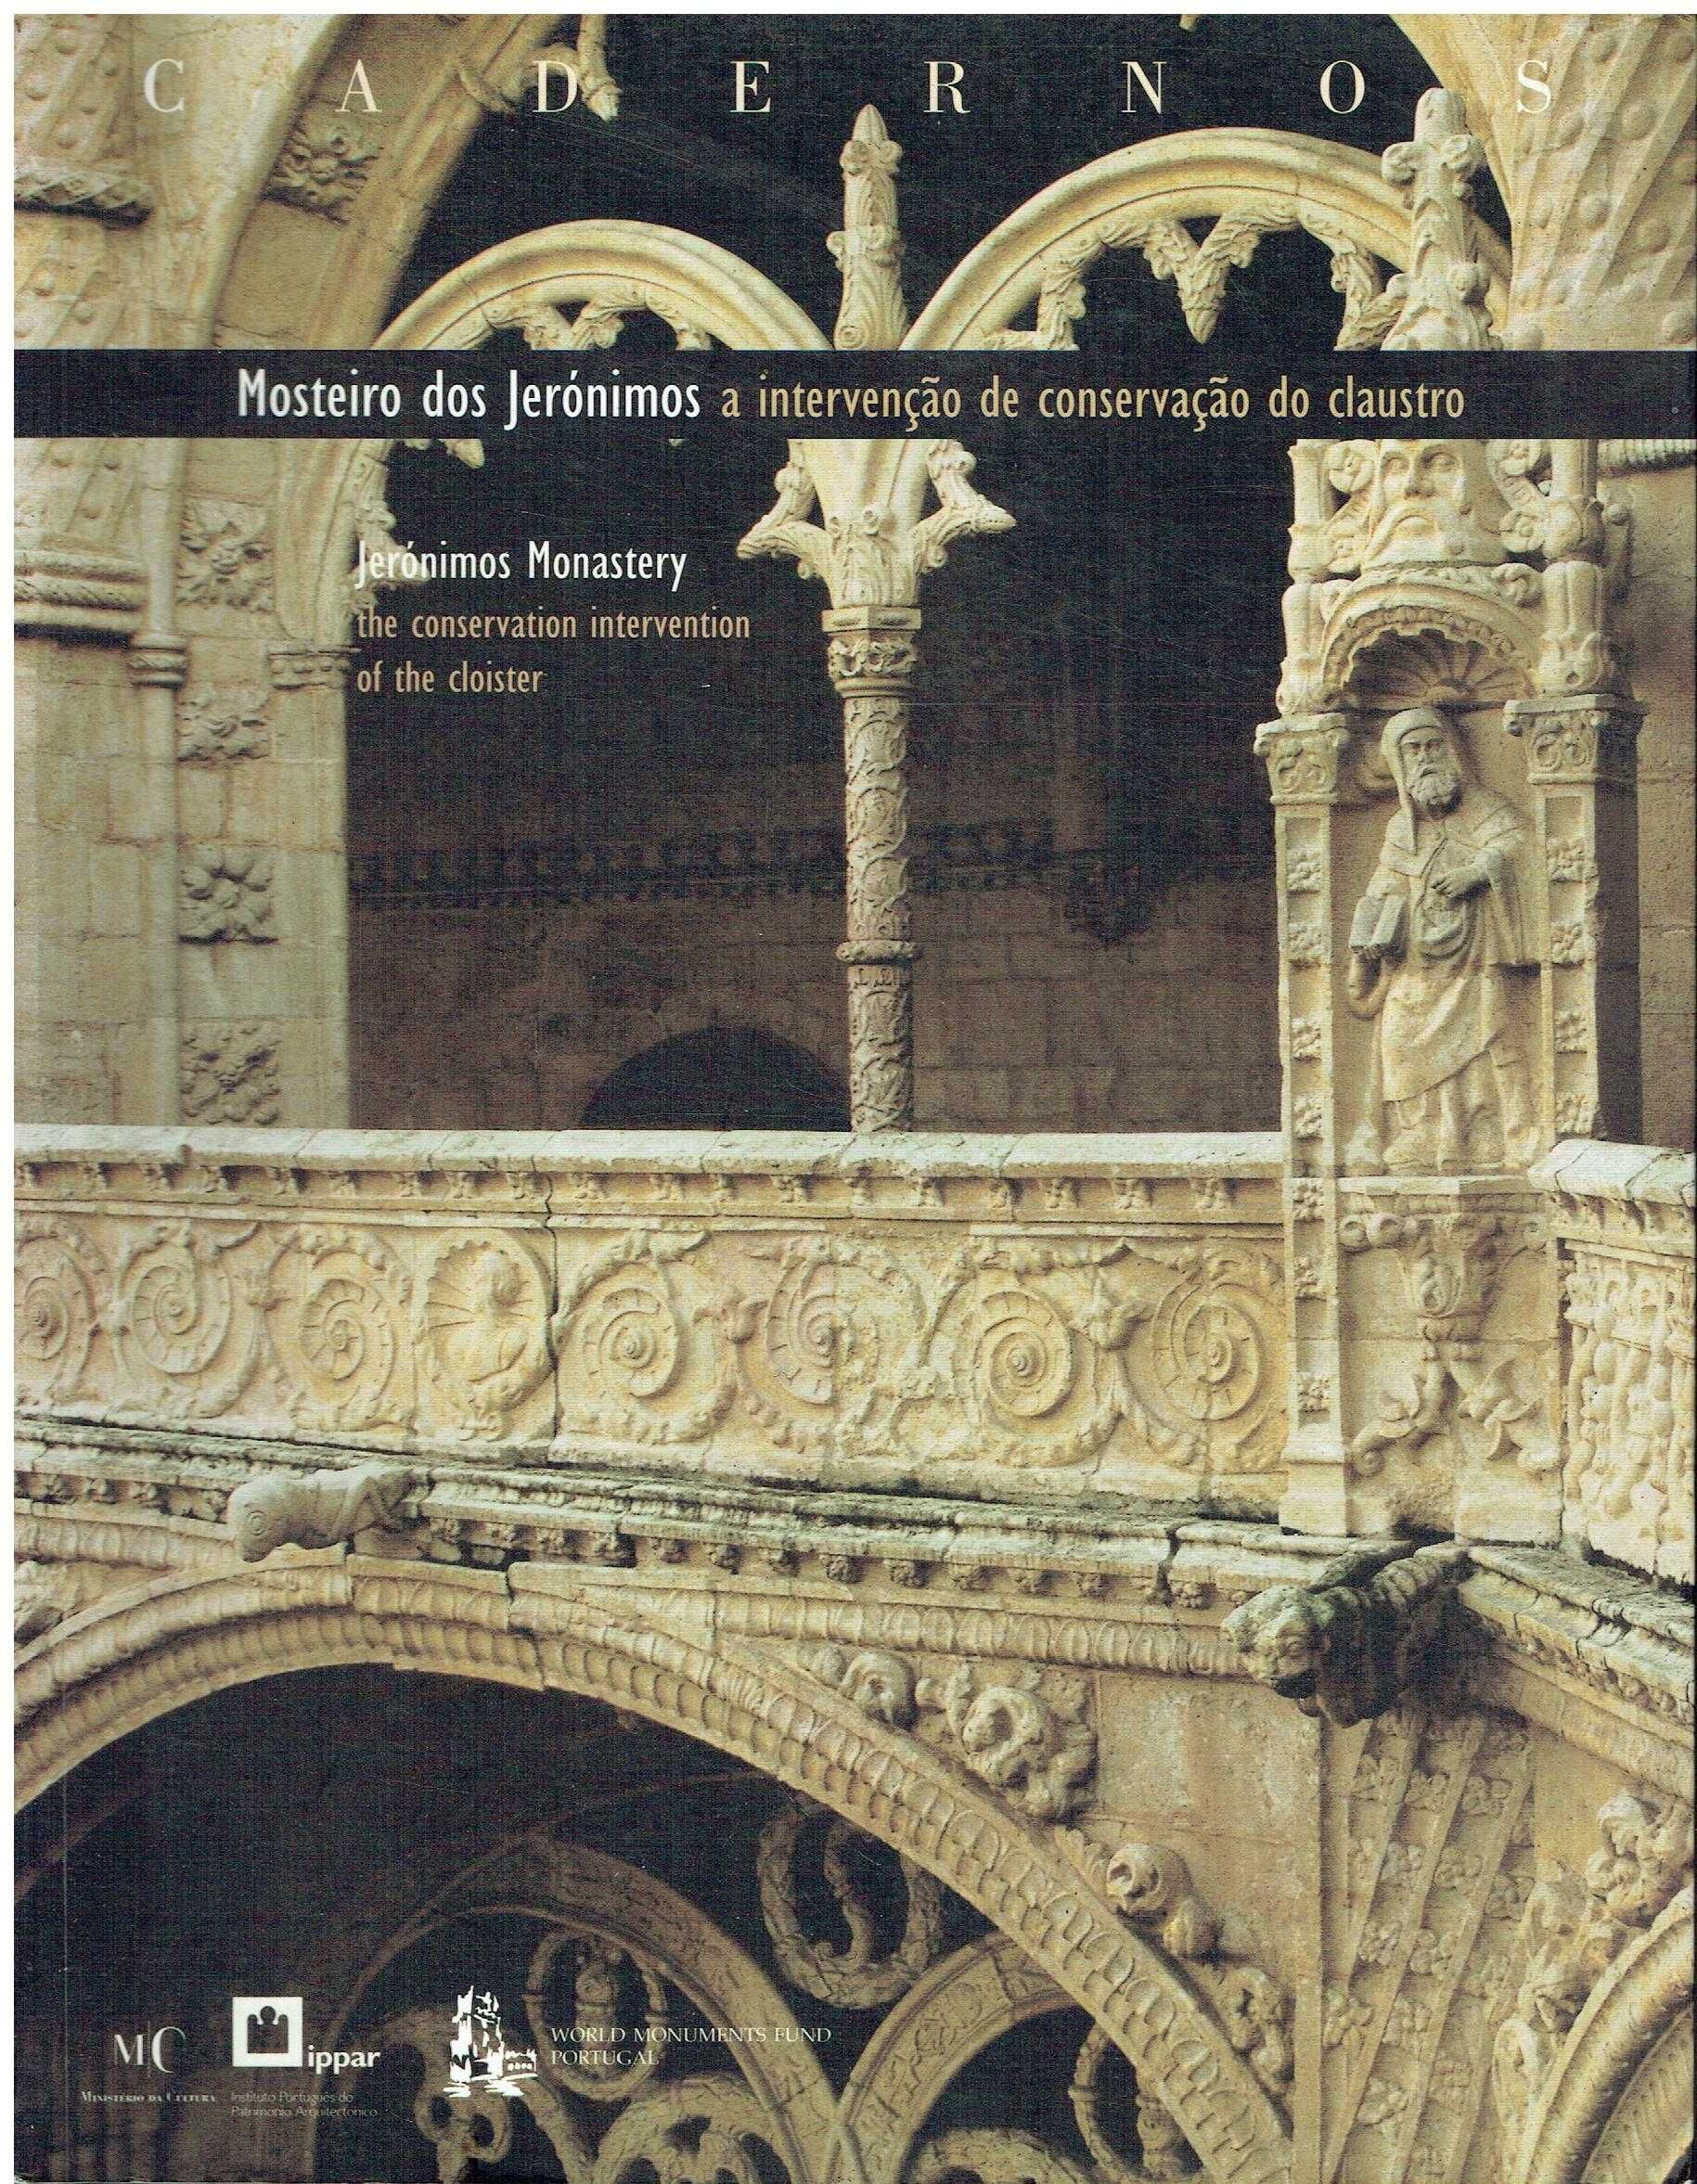 3186
Mosteiro dos Jerónimos : a intervenção de conservação do claustro